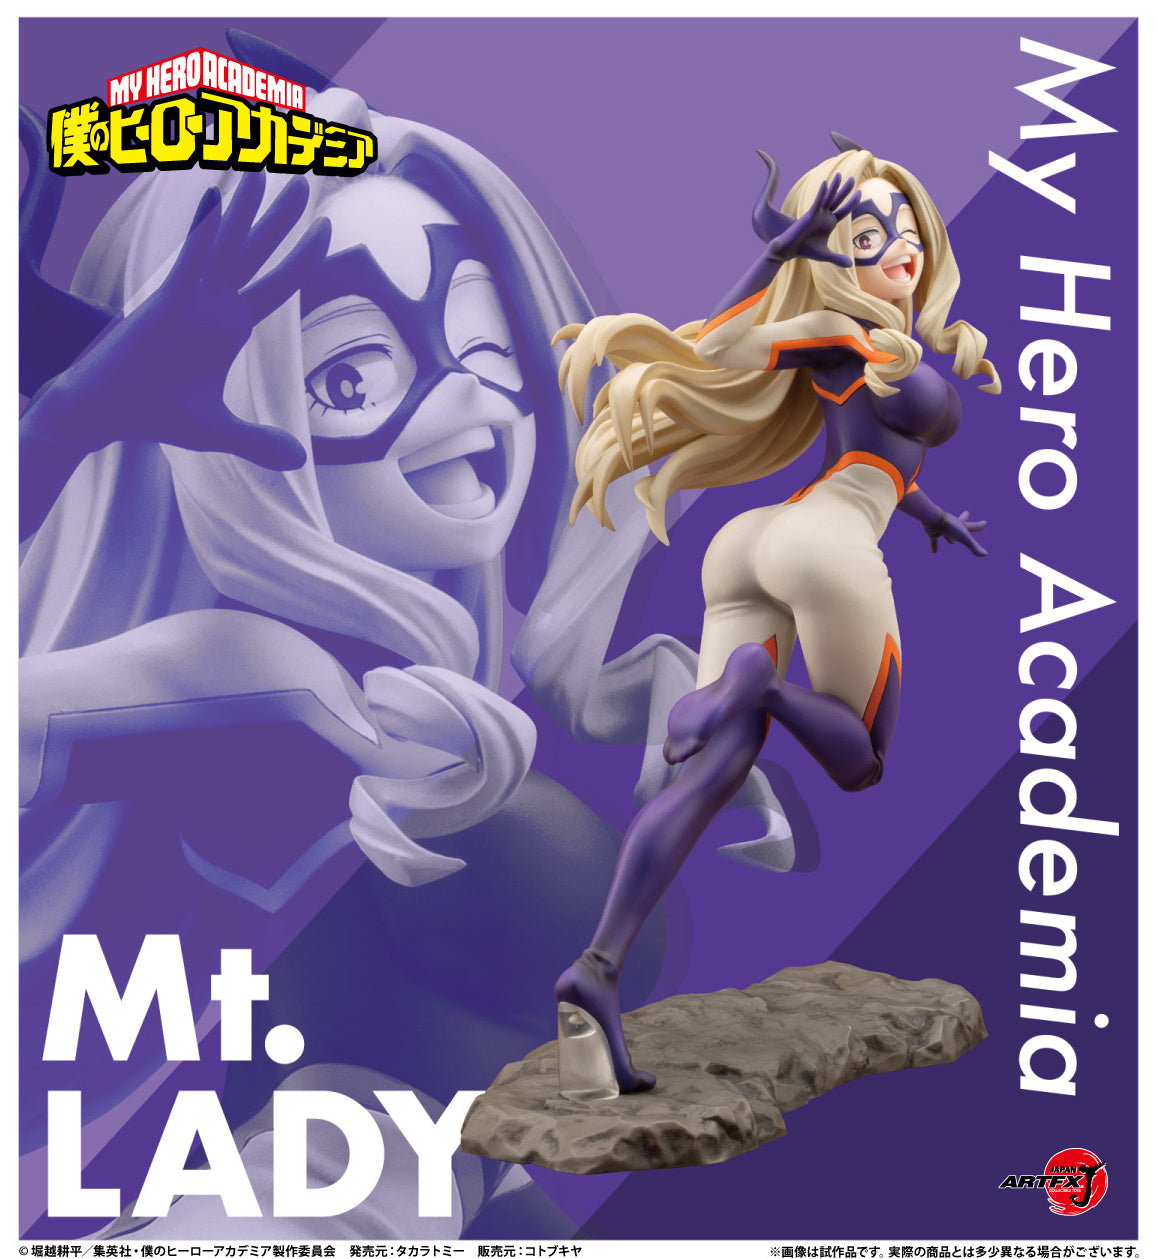 [Pre-order] My Hero Academia - Mt. Lady: ARTFX J 1/8 - KOTOBUKIYA